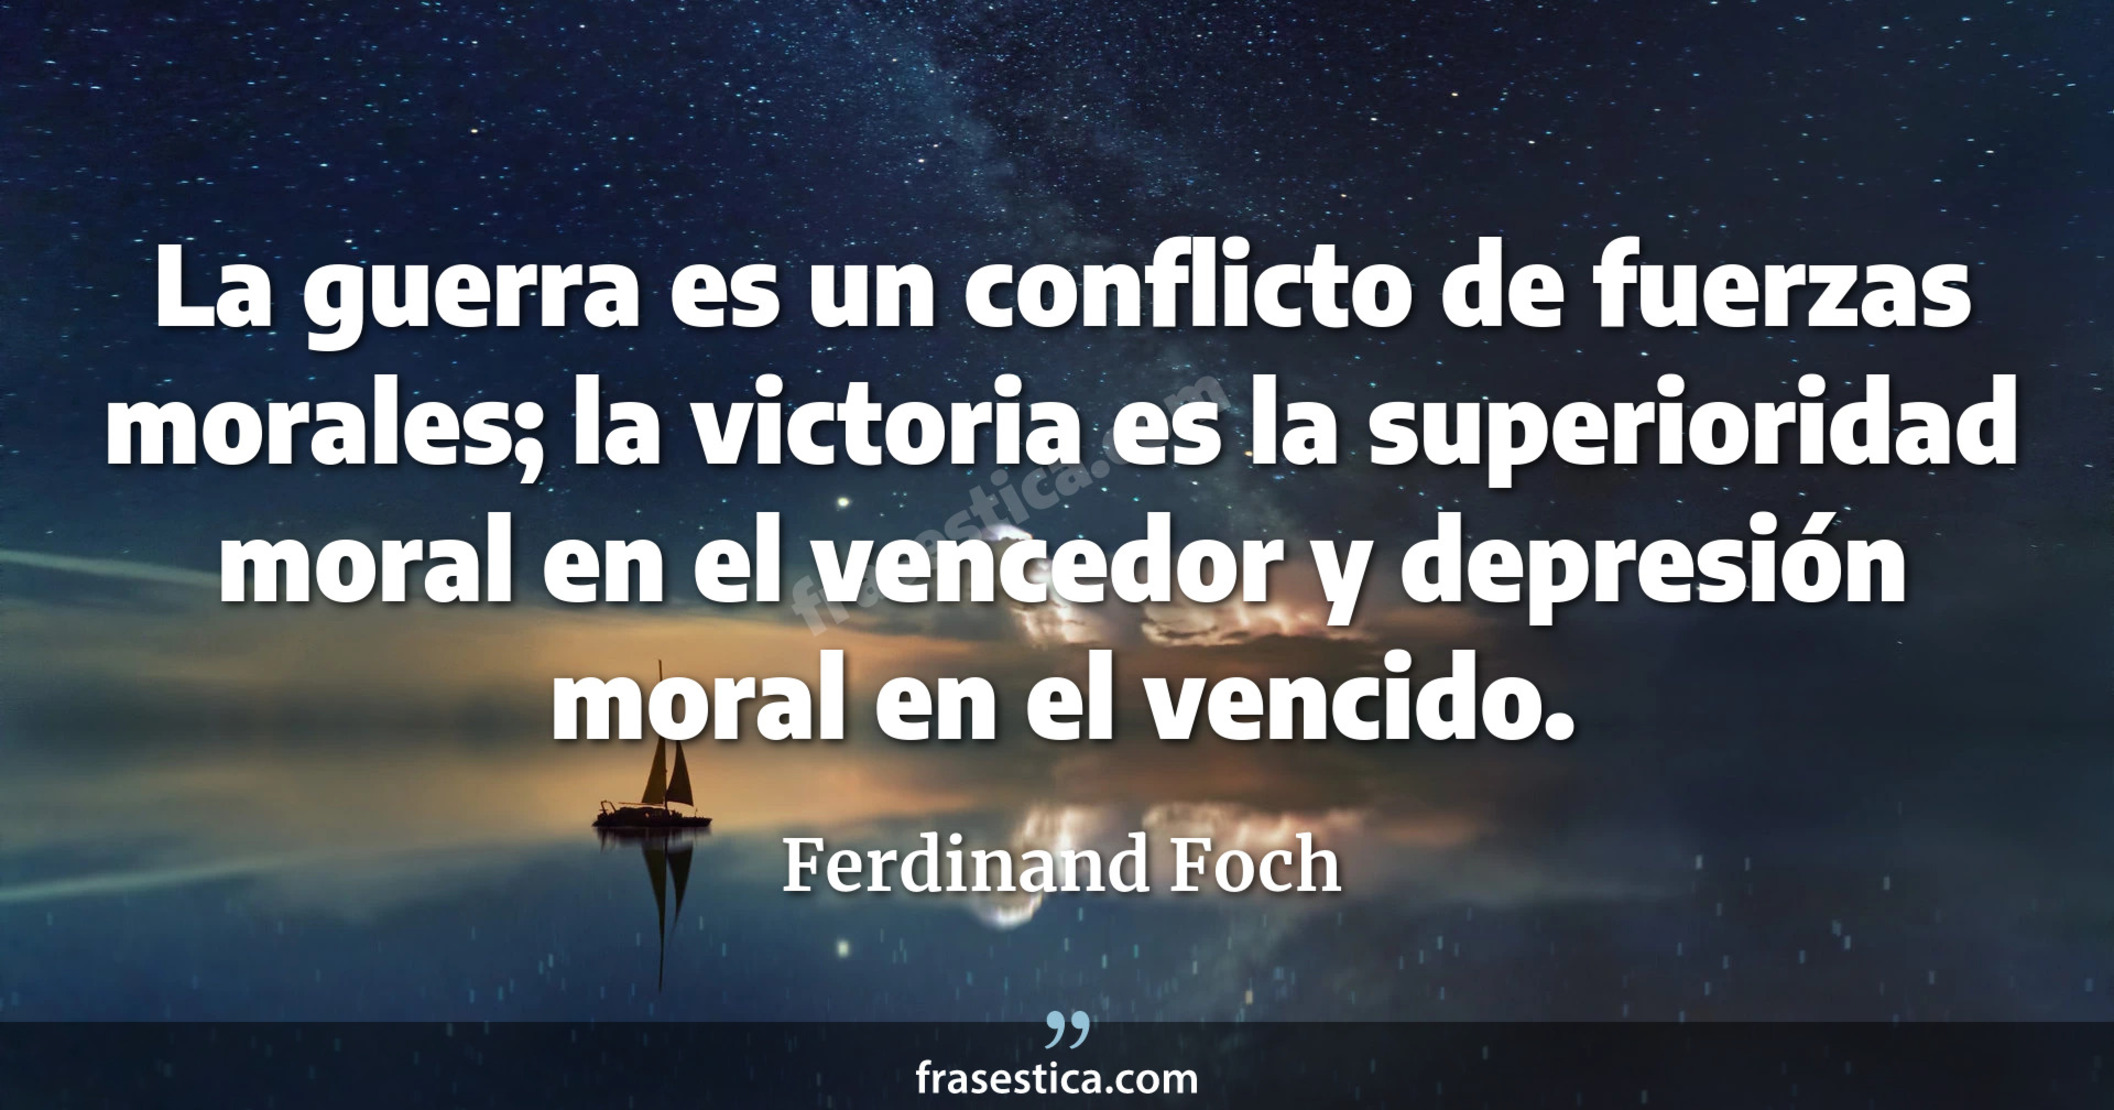 La guerra es un conflicto de fuerzas morales; la victoria es la superioridad moral en el vencedor y depresión moral en el vencido. - Ferdinand Foch